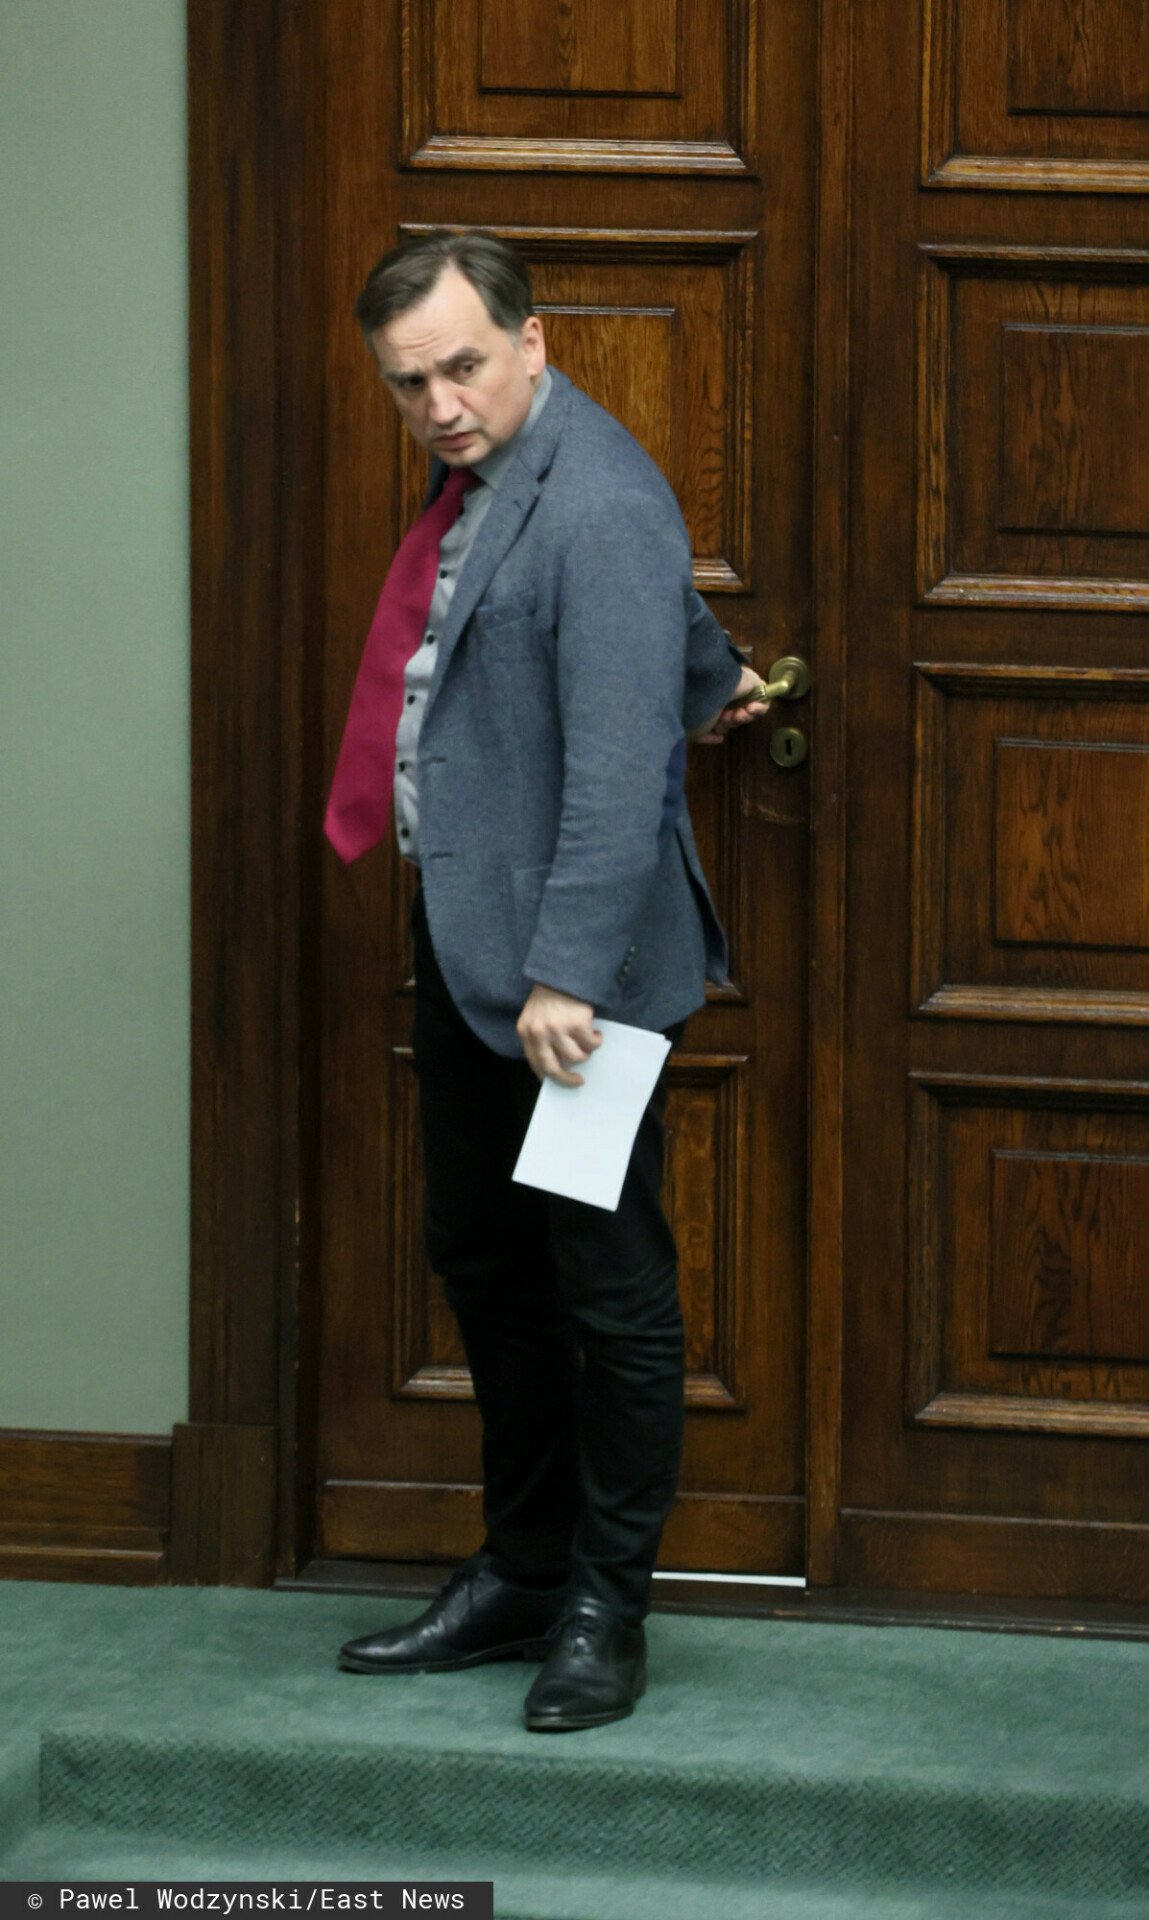 Zbigniew Ziobro w szarej marynarce i czerwonym krawacie zamykający drzwi w Sejmie RP